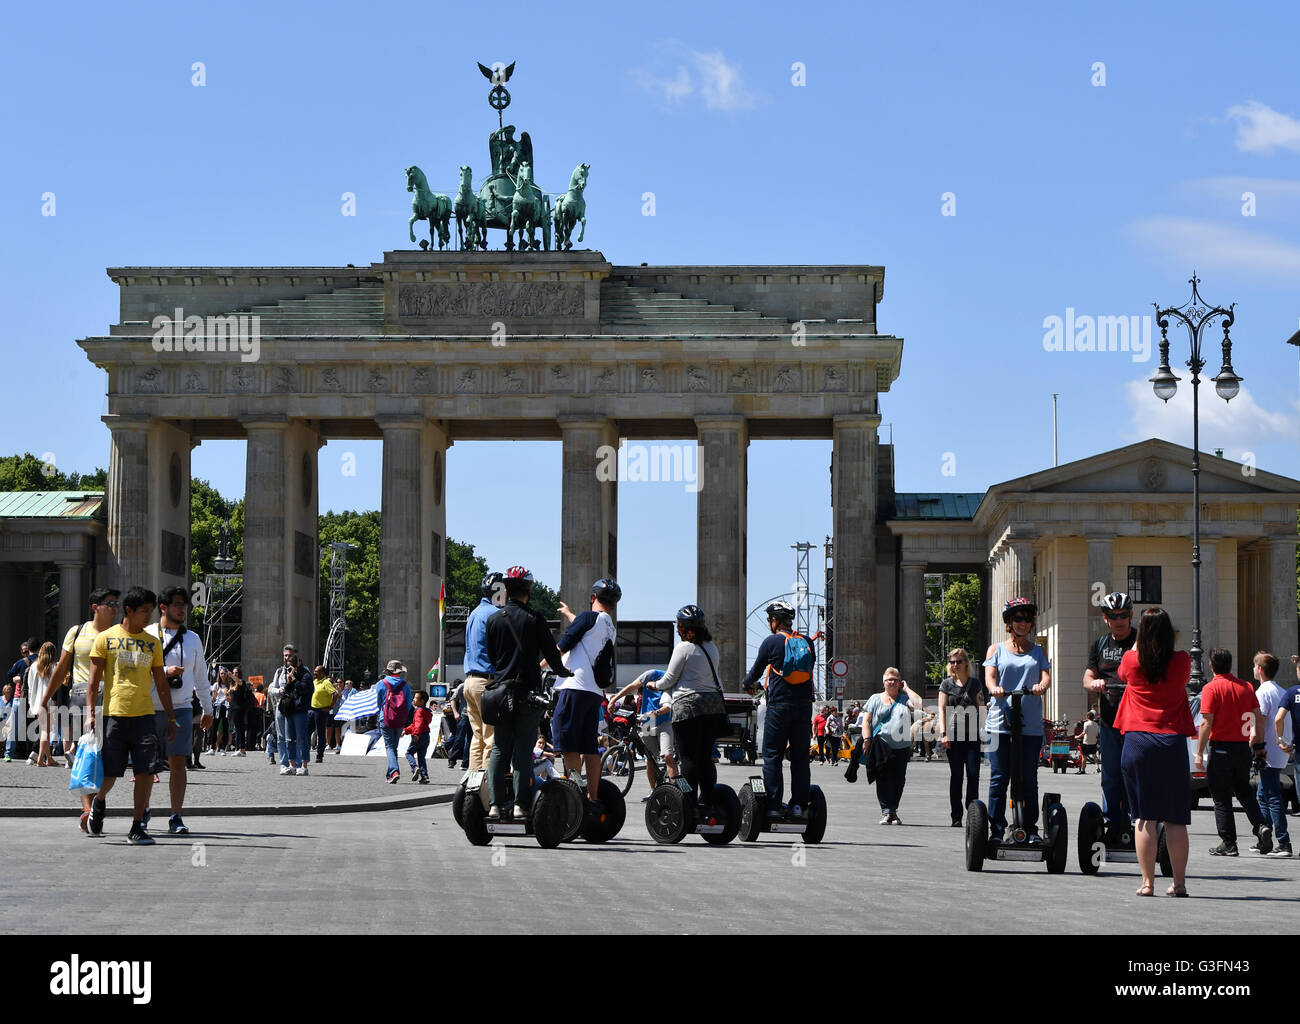 Touristen auf Segways neben Fußgängern am Brandenburger Tor in Berlin, Deutschland, 10. Juni 2016. Foto: JENS KALAENE/dpa Stockfoto